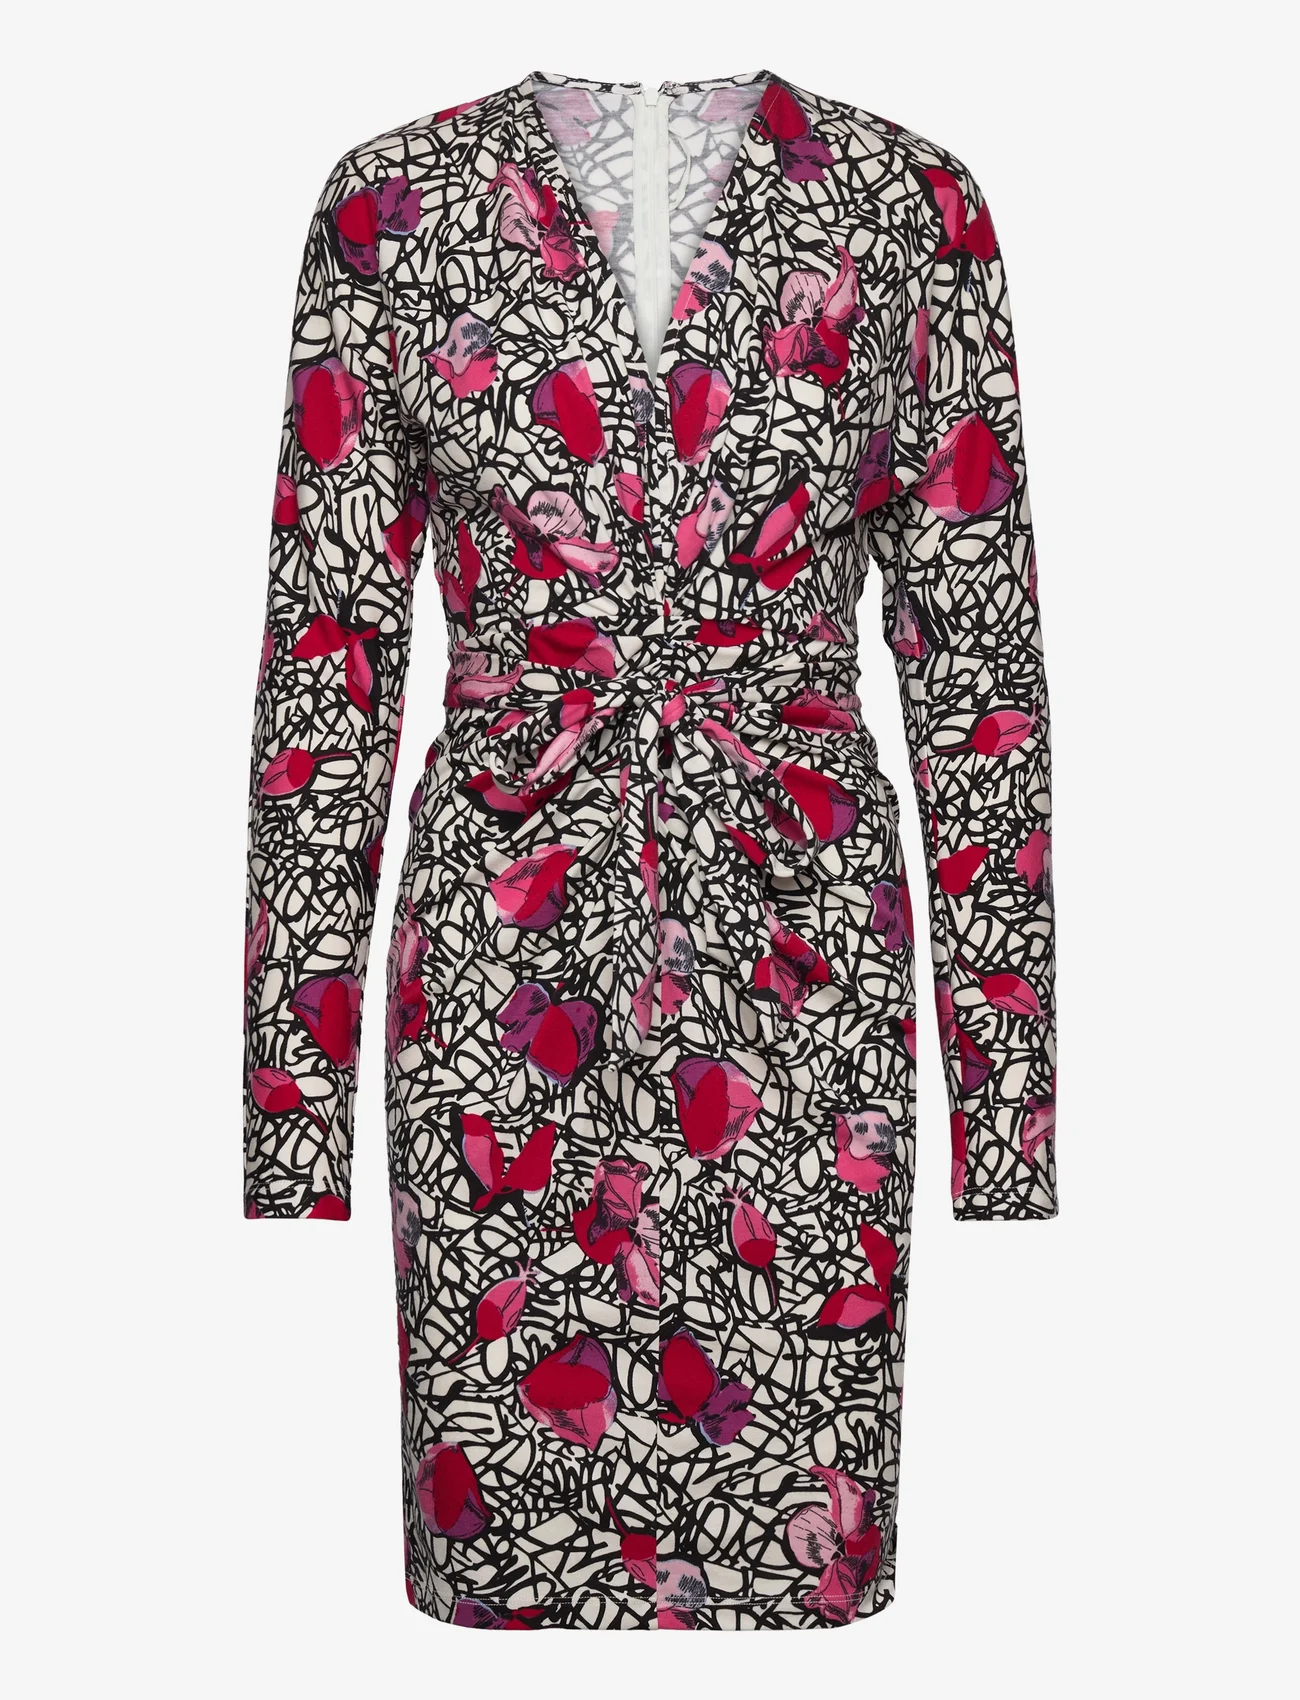 Diane von Furstenberg - DVF NEW MILEY DRESS - midi-kleider - signature floral s - 1